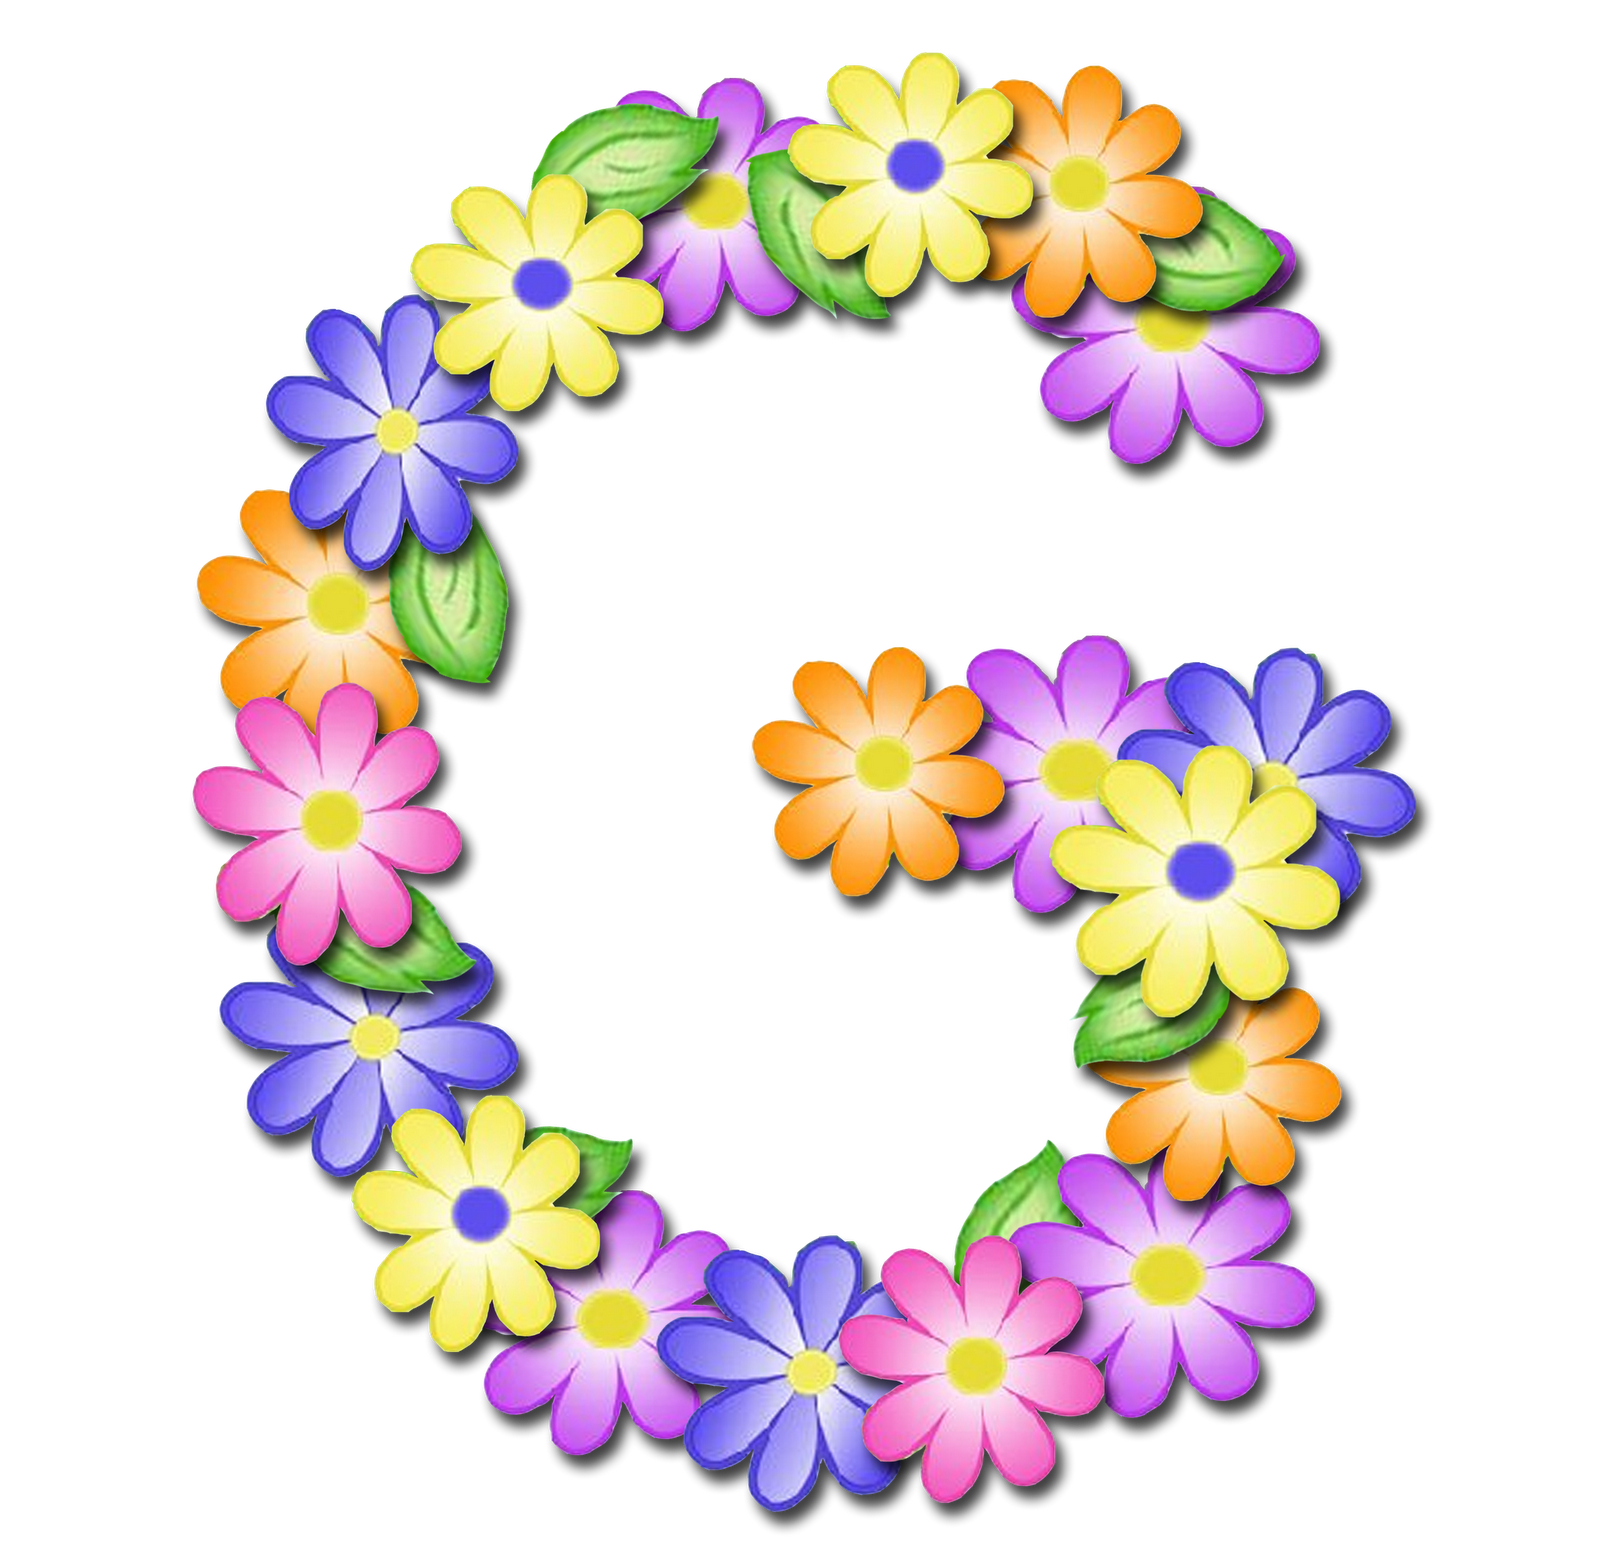 صور الحروف الإنجليزية بأجمل الزهور والورود بخلفية شفافة بنج png وجودة عالية للمصممين :: إبحث عن حروف إسمك بالإنجليزية G